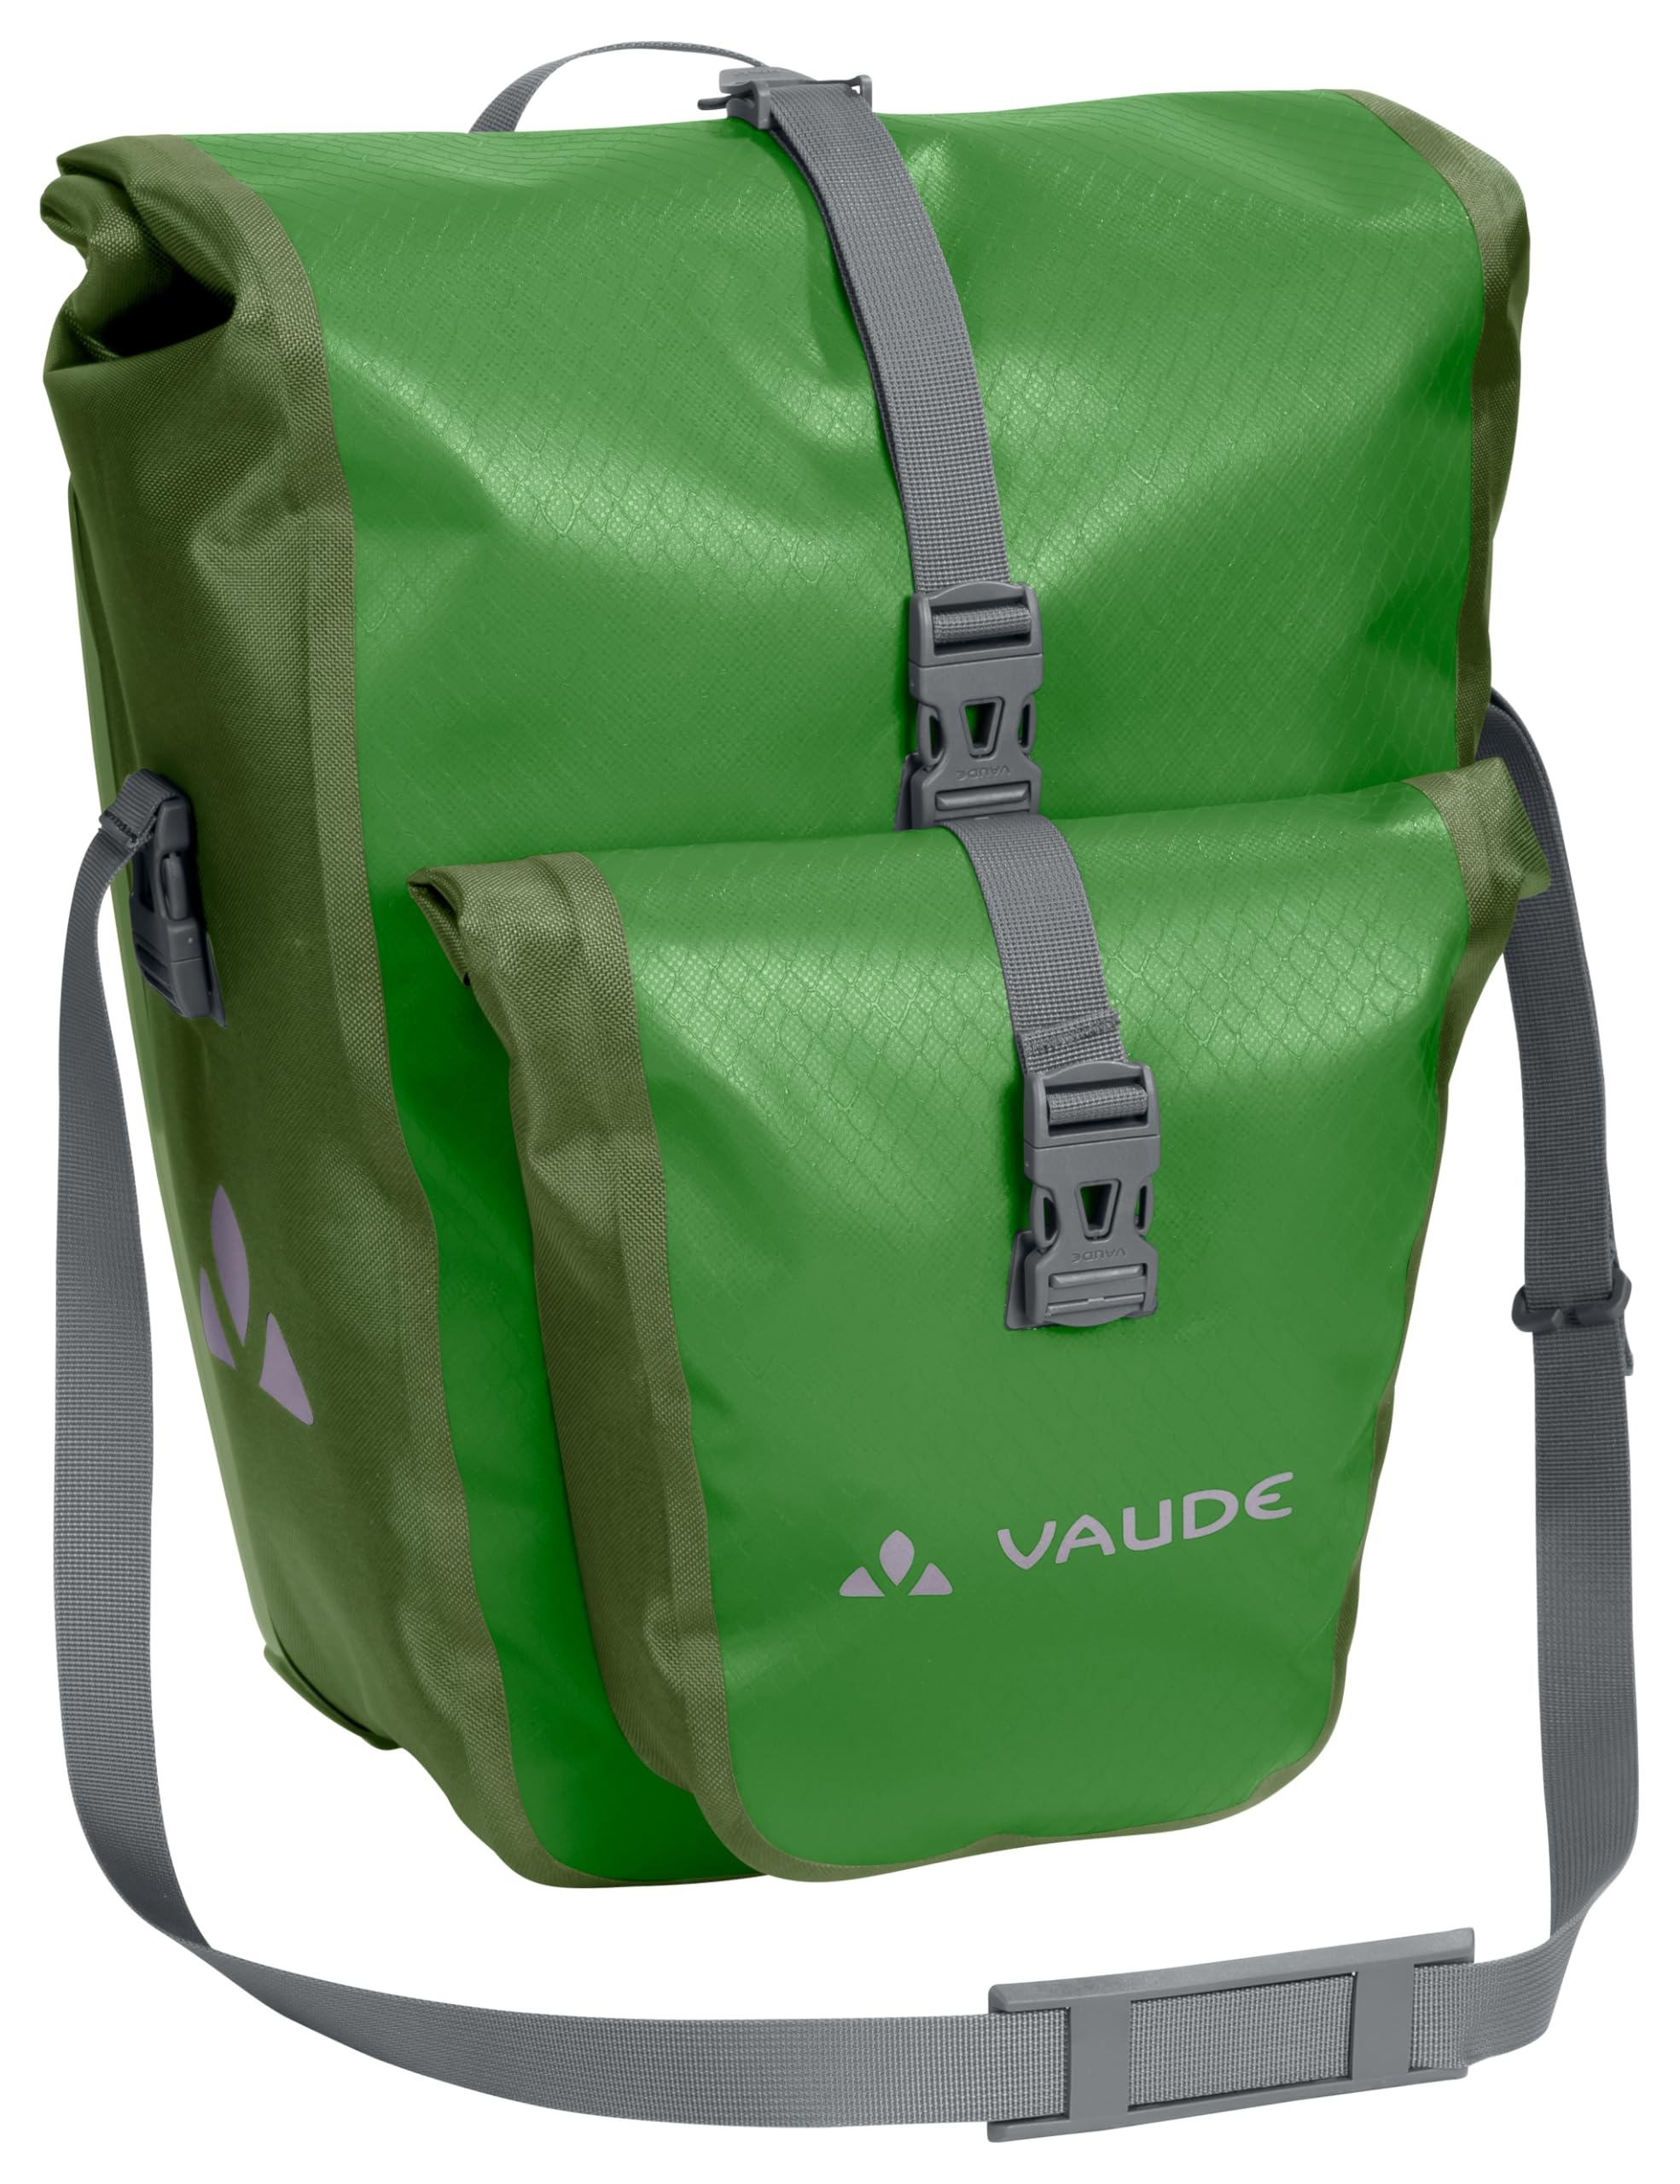 Vaude 16010 Unisex – Erwachsene Aqua Back Plus Single Hinterradtaschen, Parrot Green, Einheitsgröße